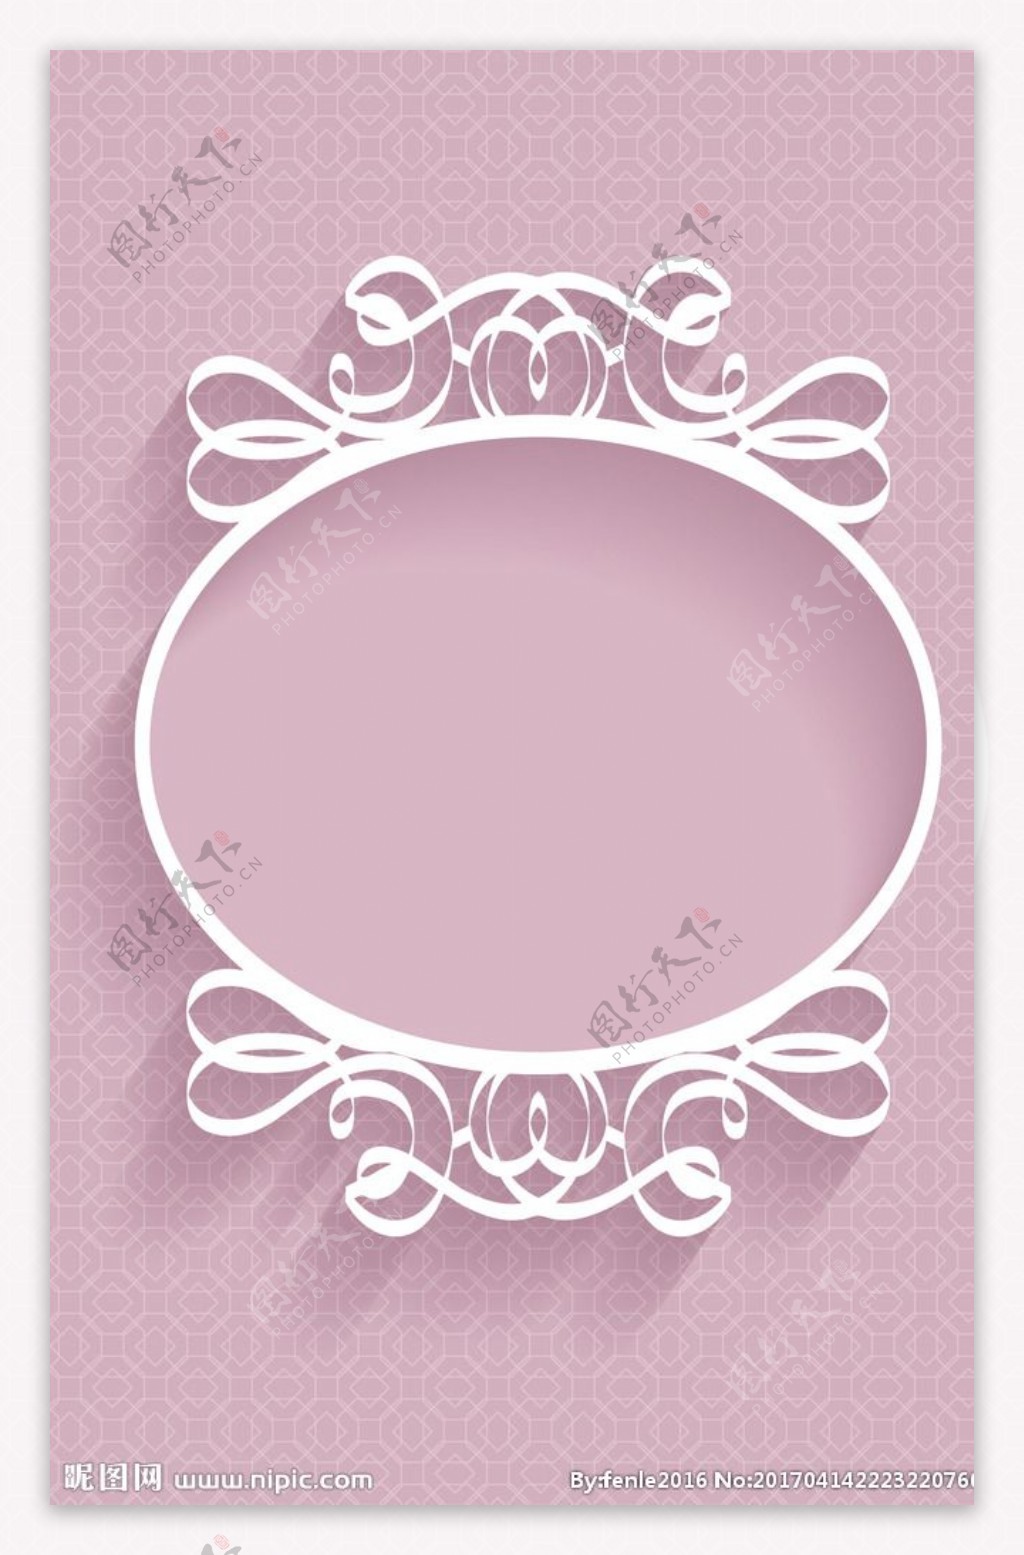 矢量粉色圆形花纹窗格边框背景